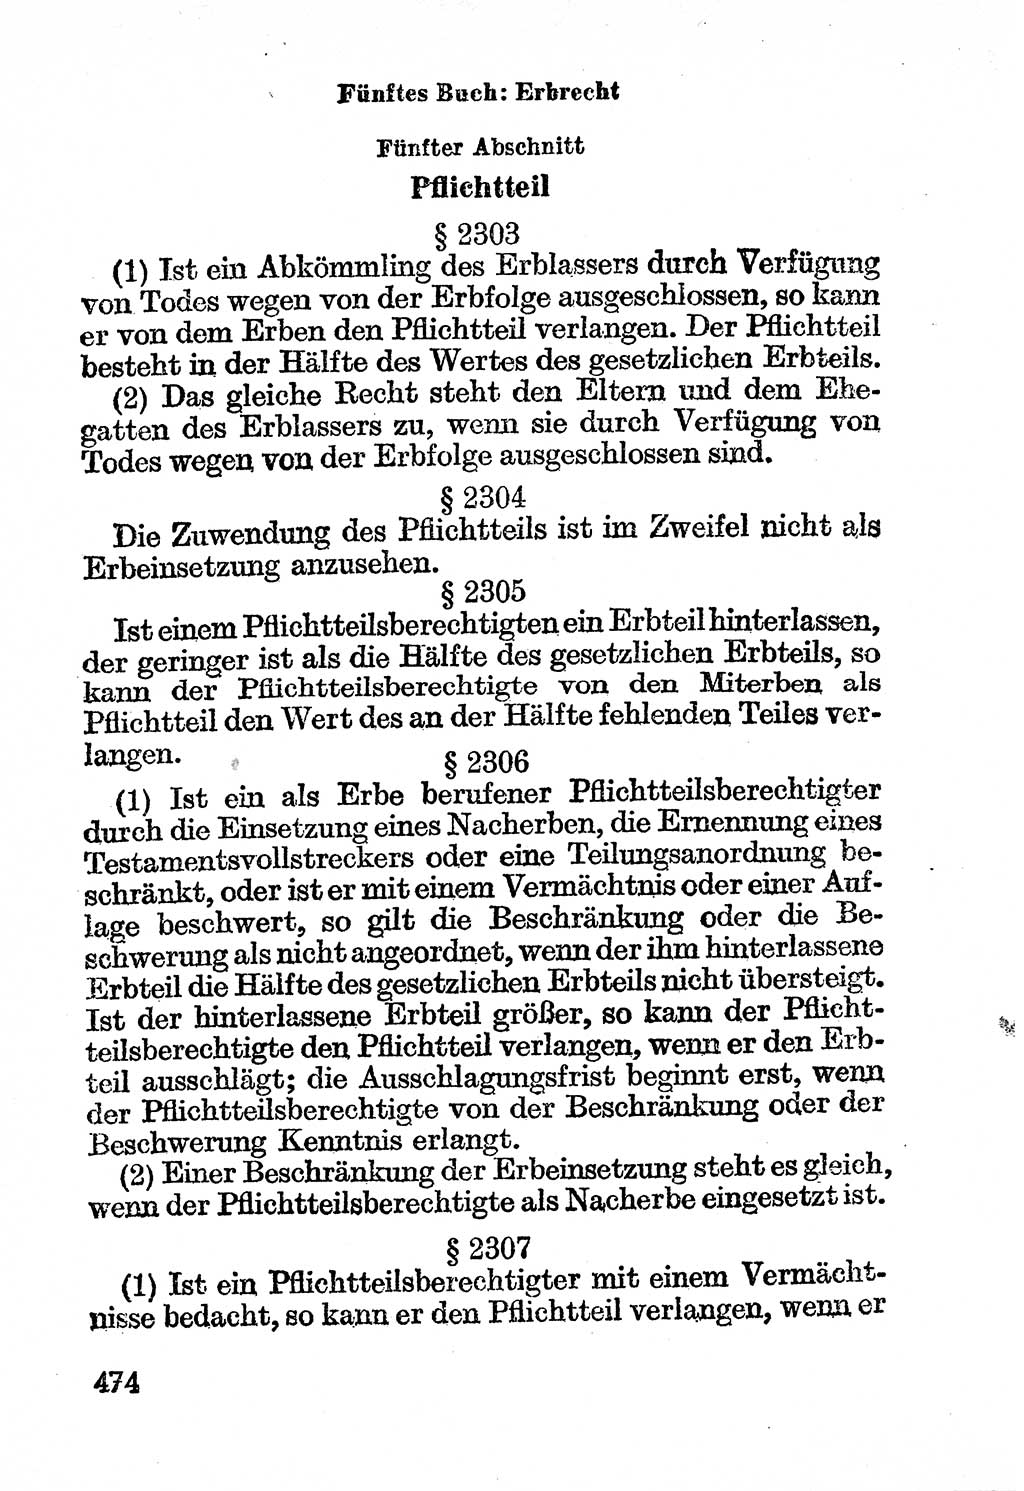 Bürgerliches Gesetzbuch (BGB) nebst wichtigen Nebengesetzen [Deutsche Demokratische Republik (DDR)] 1956, Seite 474 (BGB Nebenges. DDR 1956, S. 474)